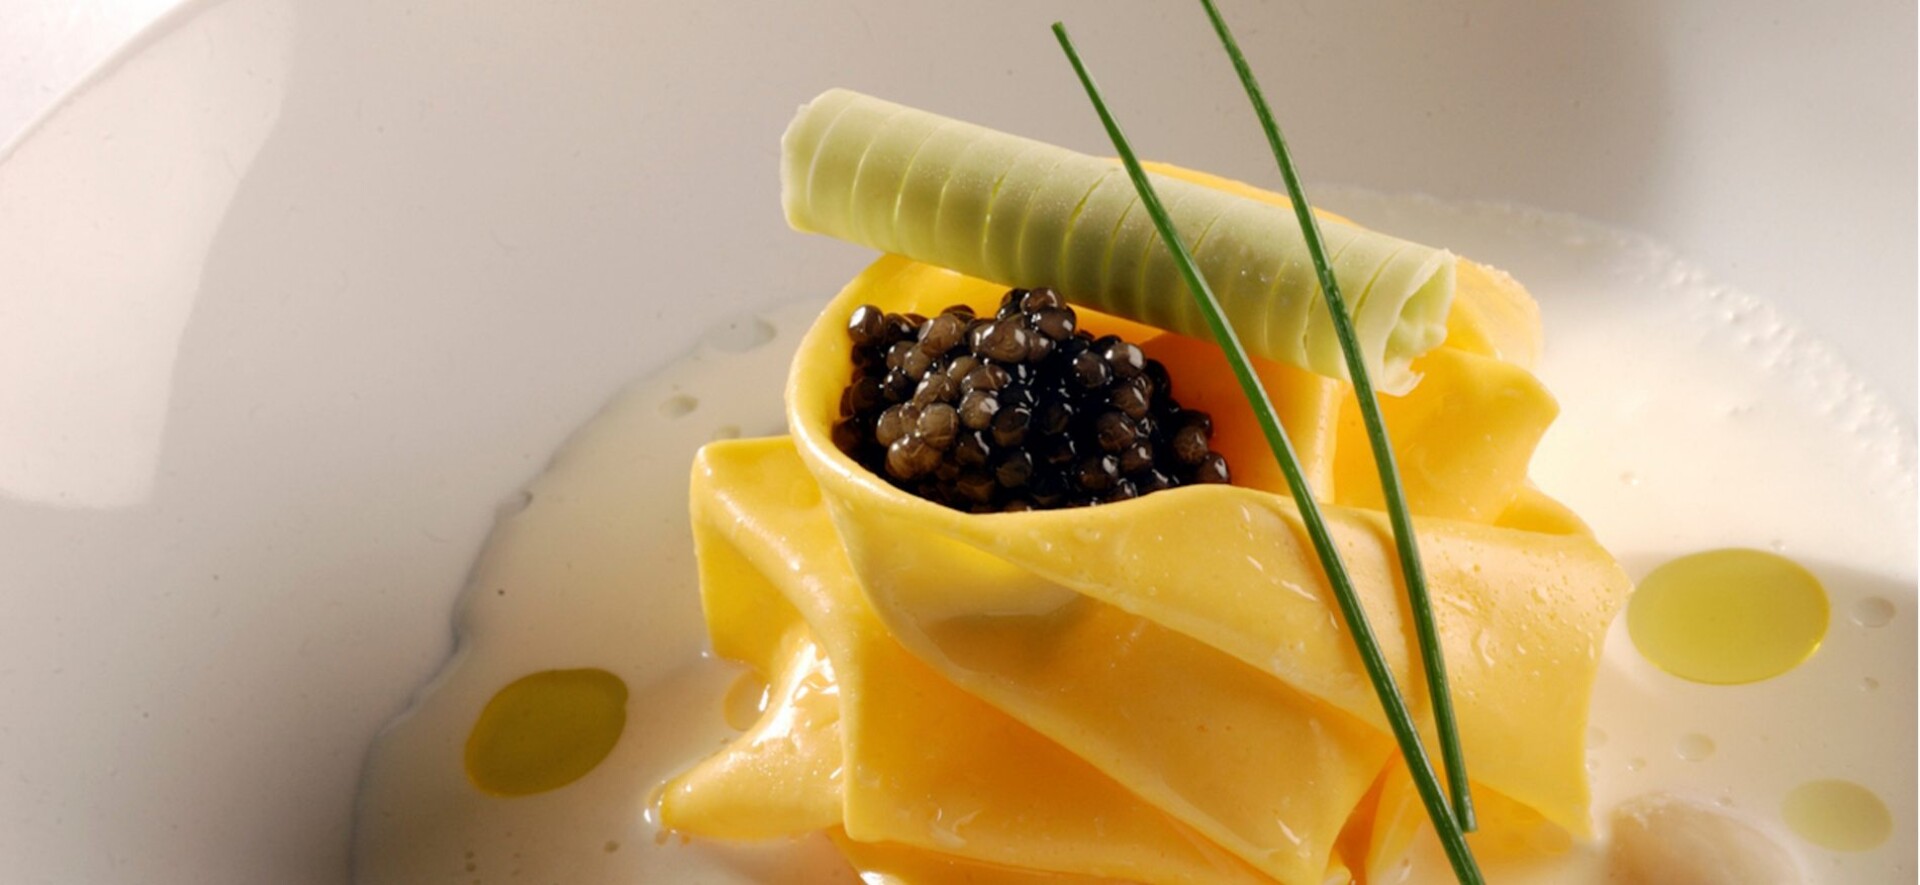 /uploads/image/399485645_huevo-con-caviar-sobre-pure-de-coliflor-y-mantequilla-de-cebollino-1-akelarre_lg.jpg